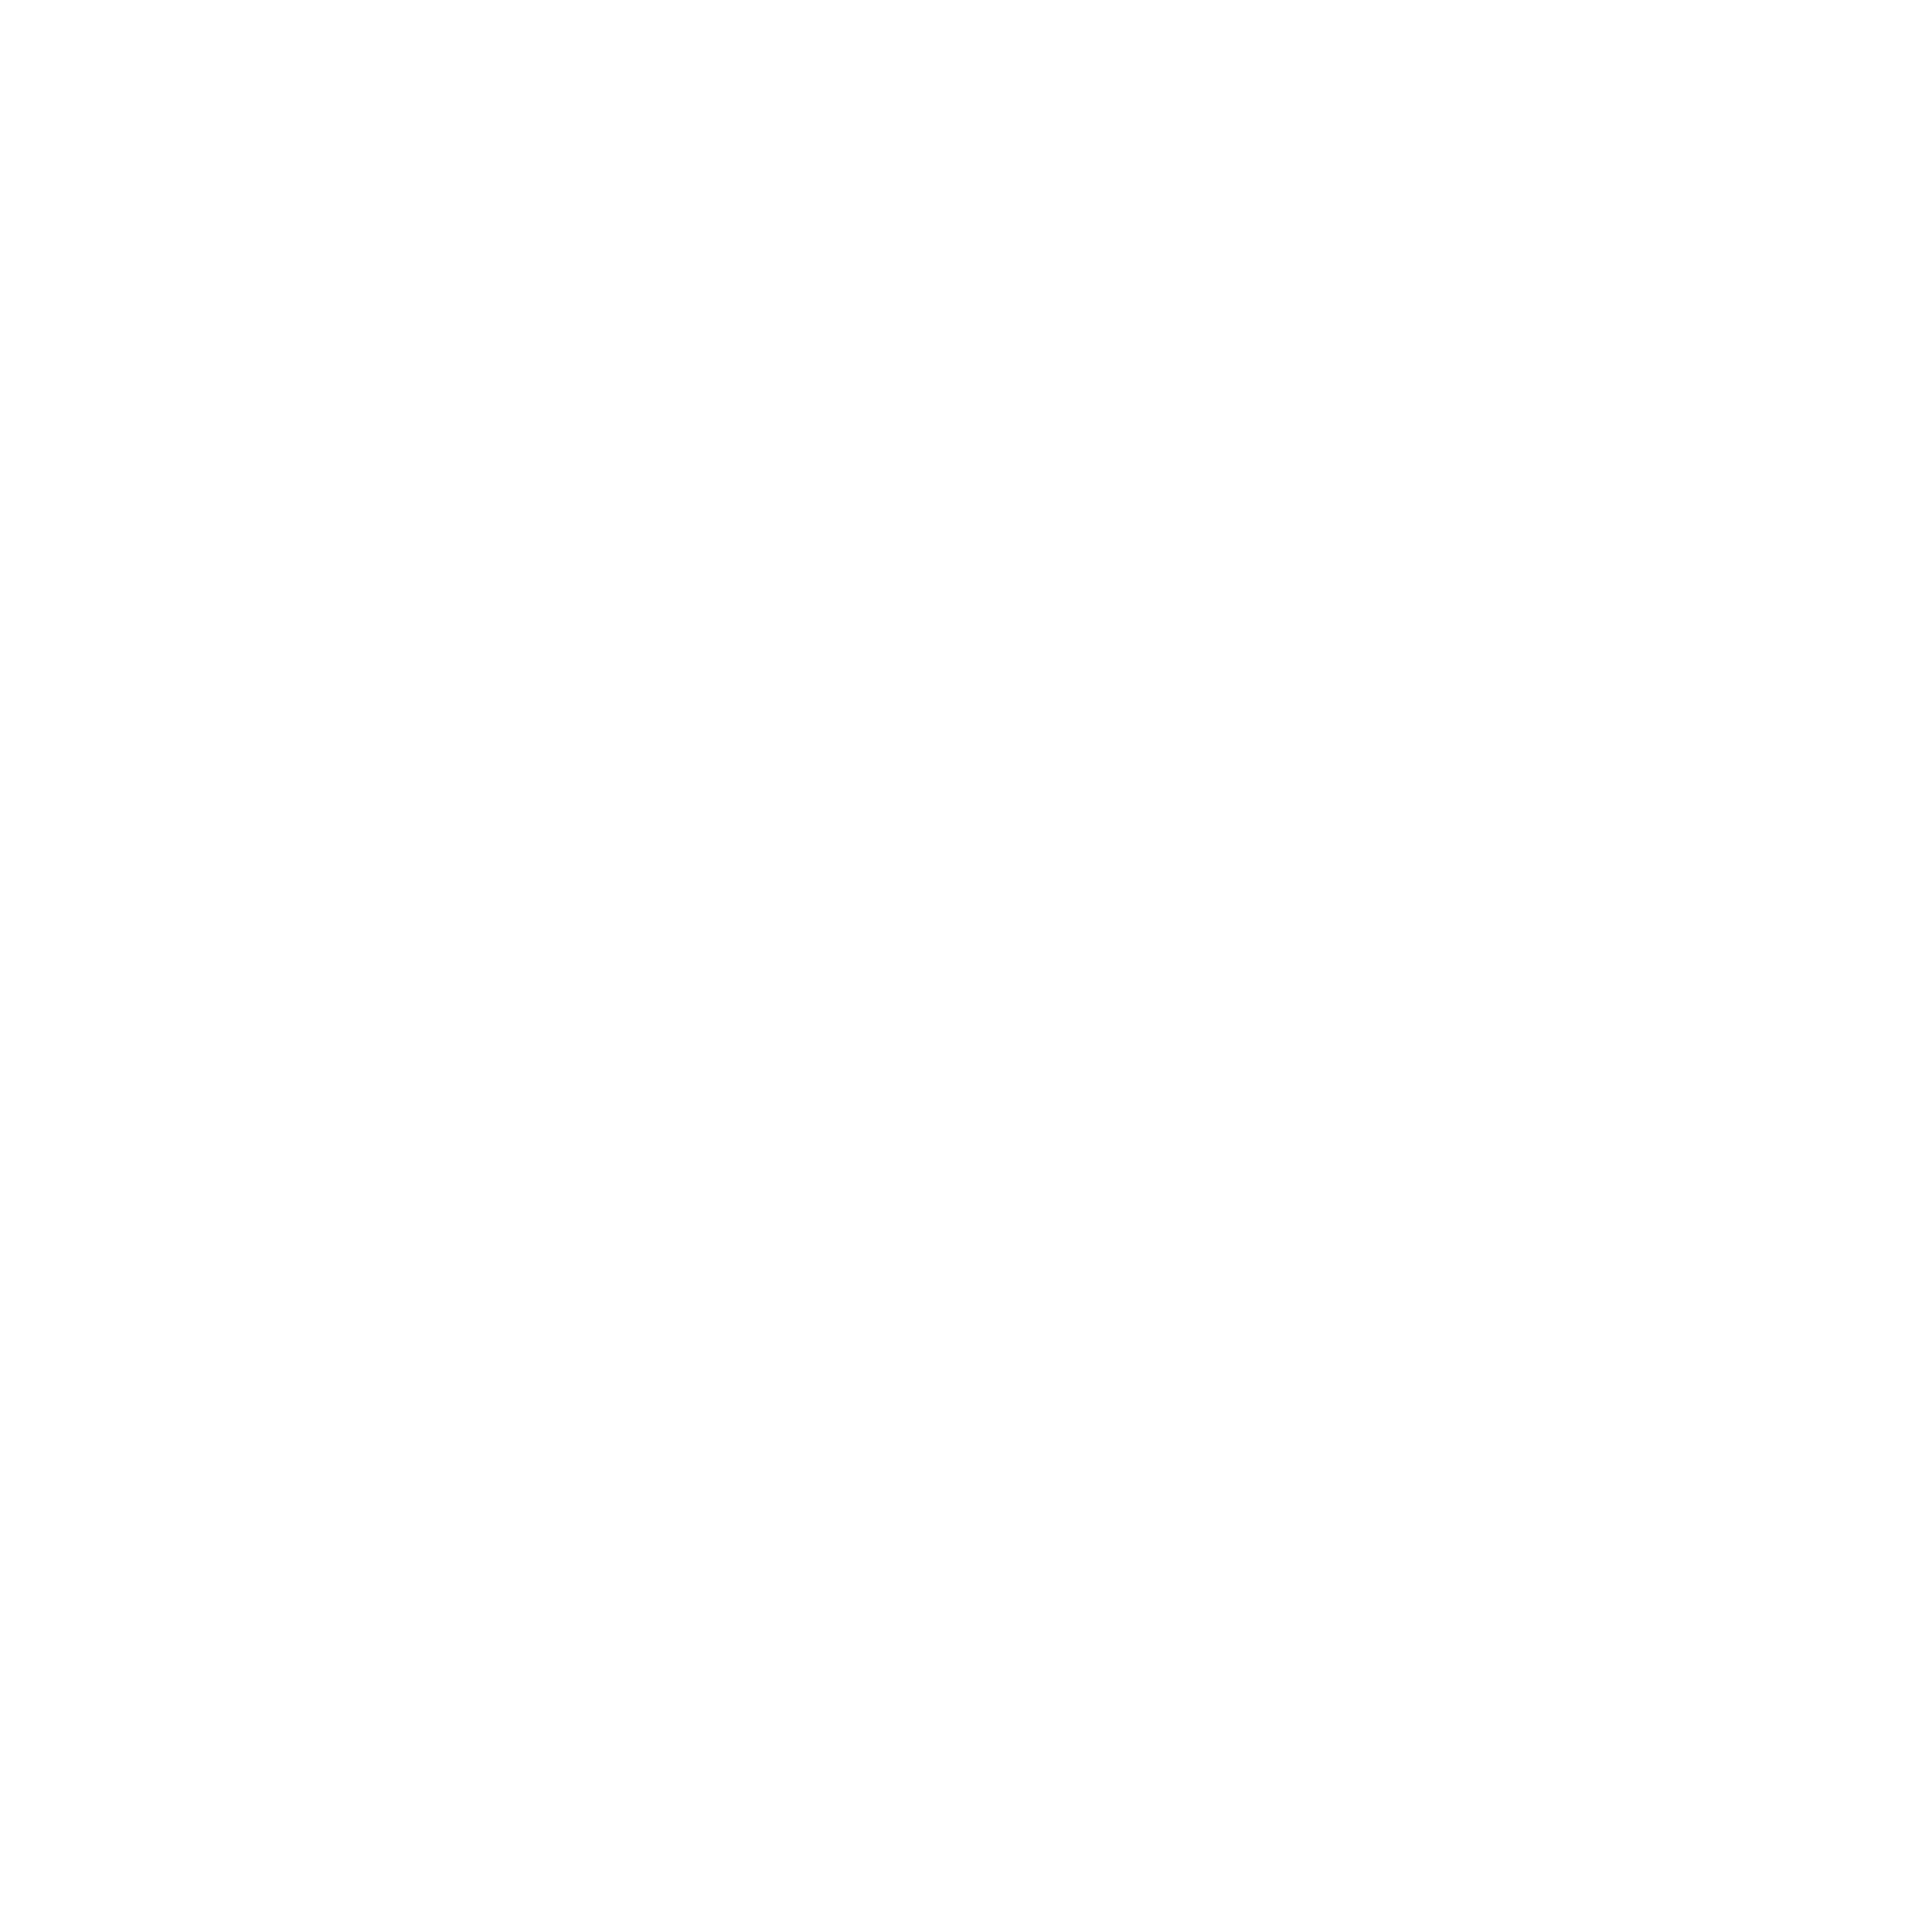 micros-logo-black-and-white